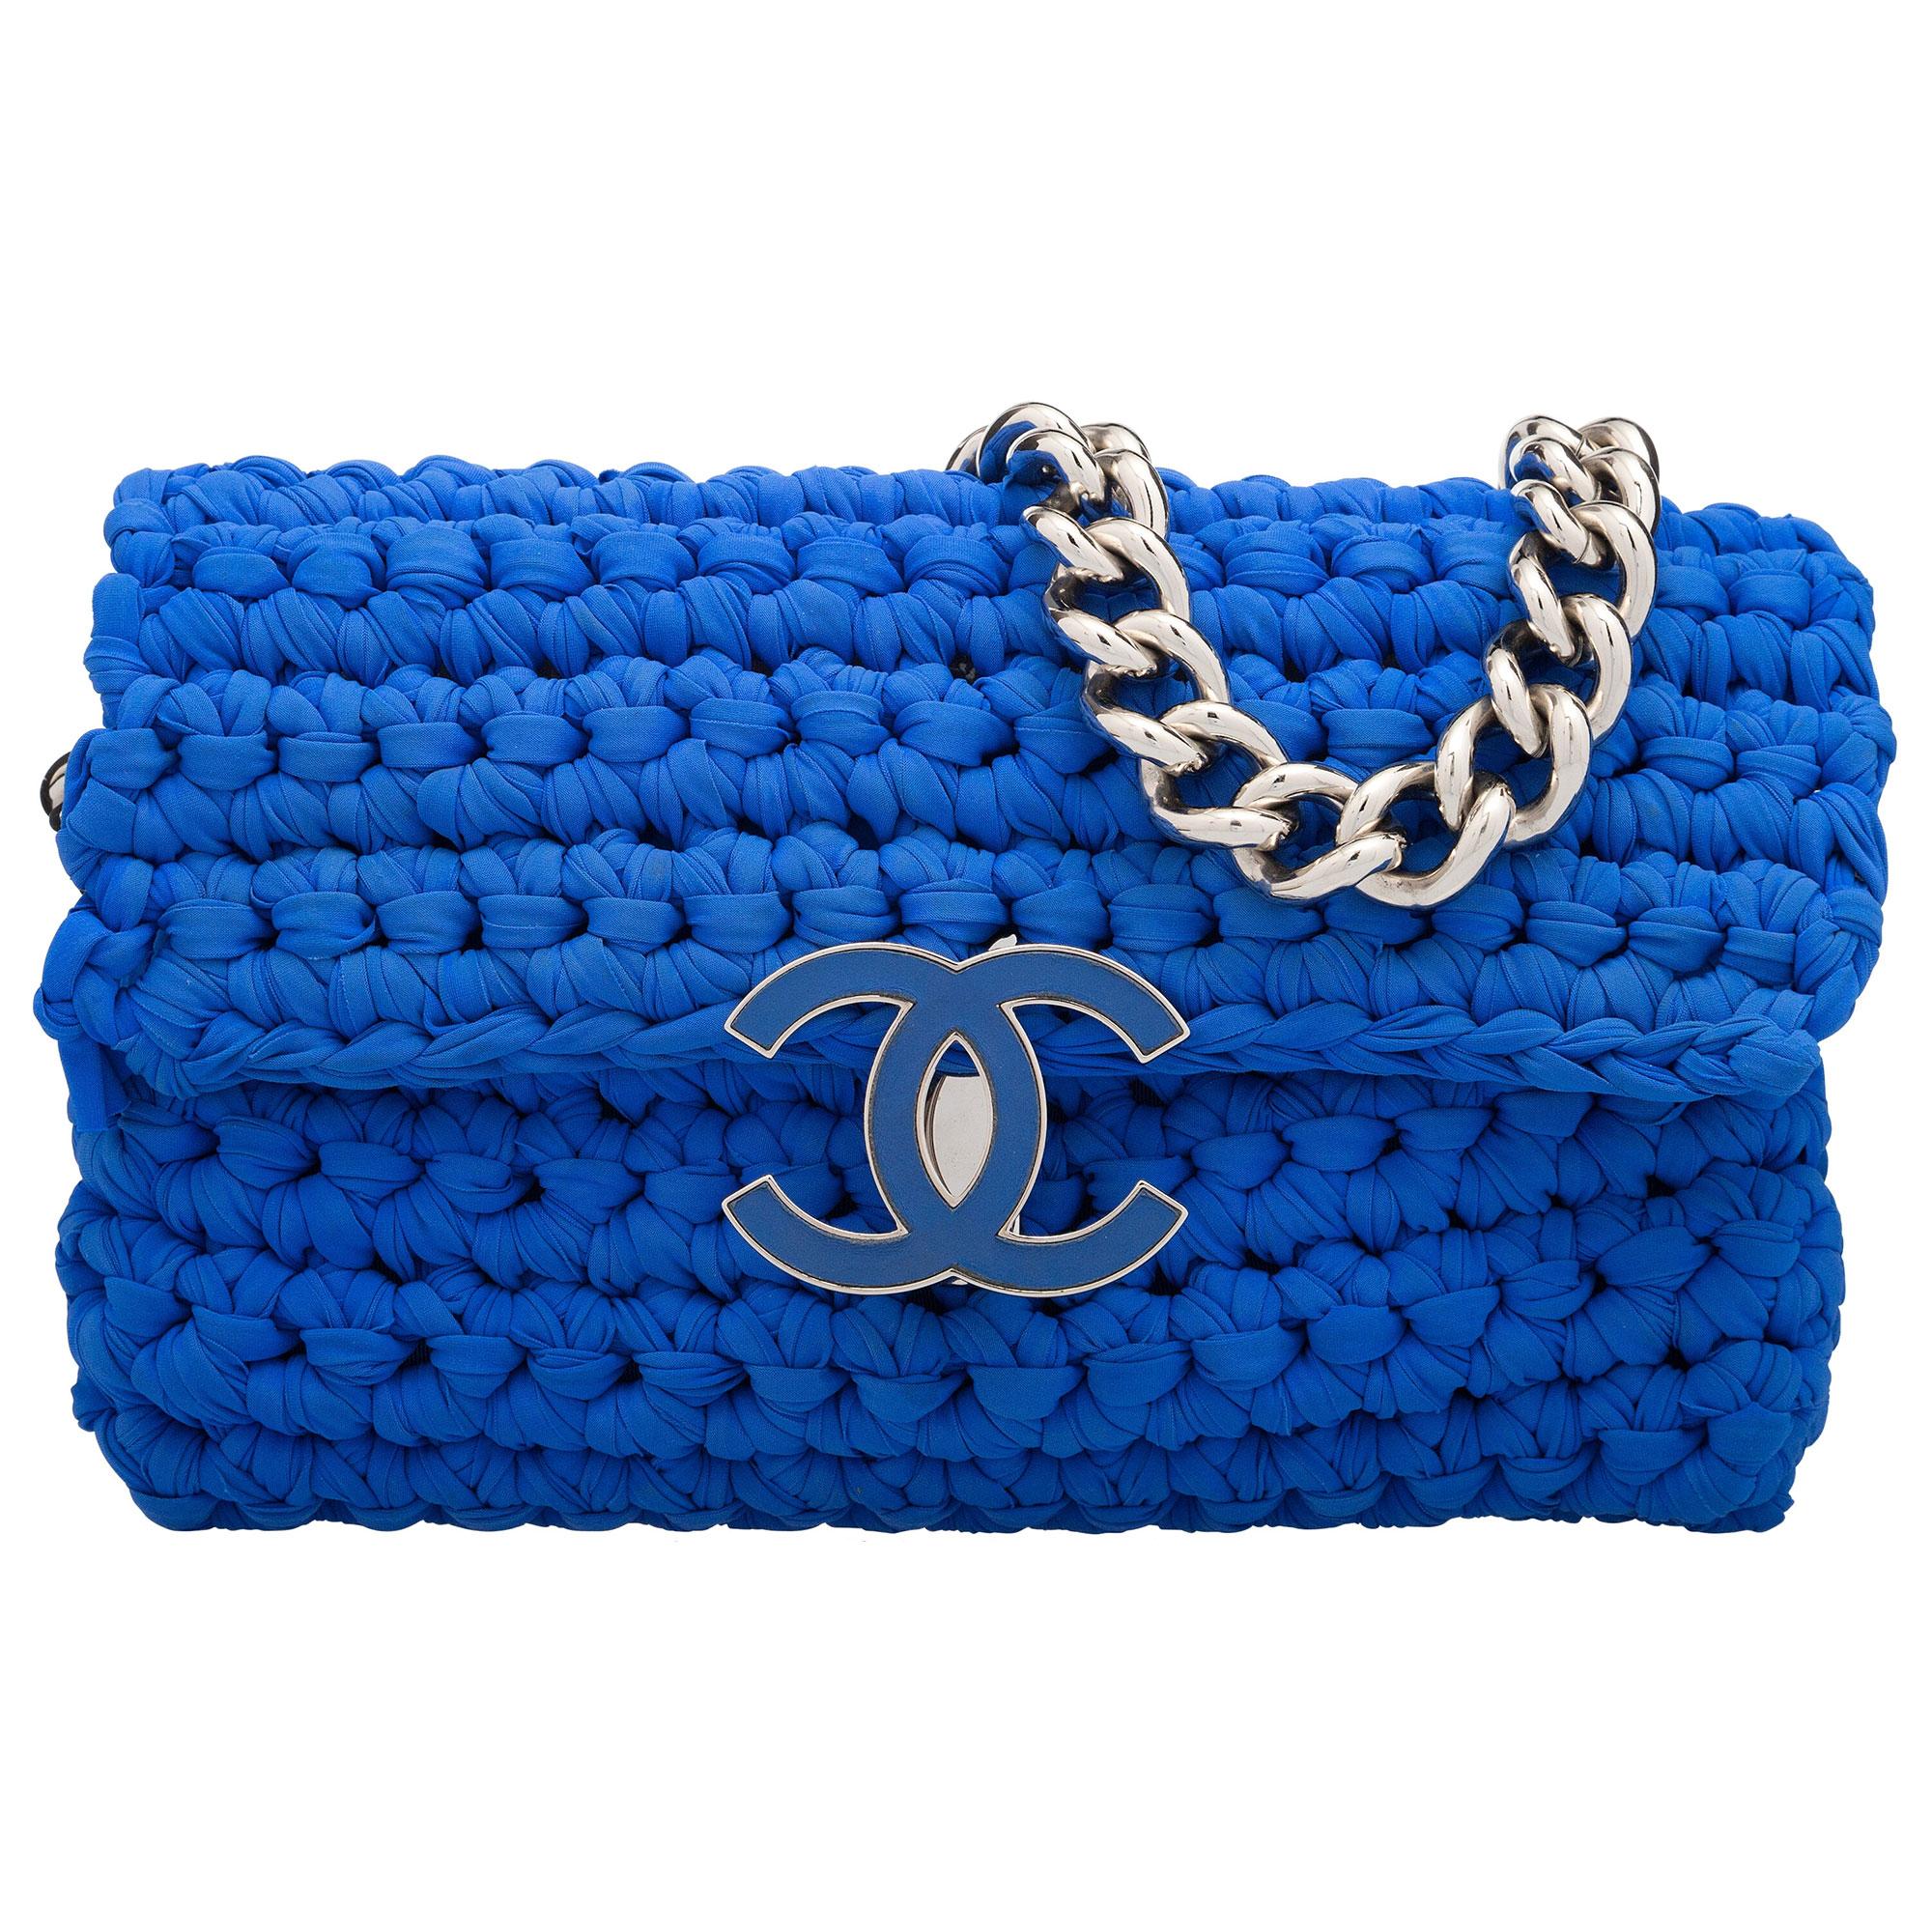 Chanel Classic Flap Electric Crochet Collectors Sac à bandoulière en tissu bleu

Année : 2014
Matériel argenté
Poche intérieure zippée
Doublure intérieure en toile bleue
Longueur de la sangle : 11